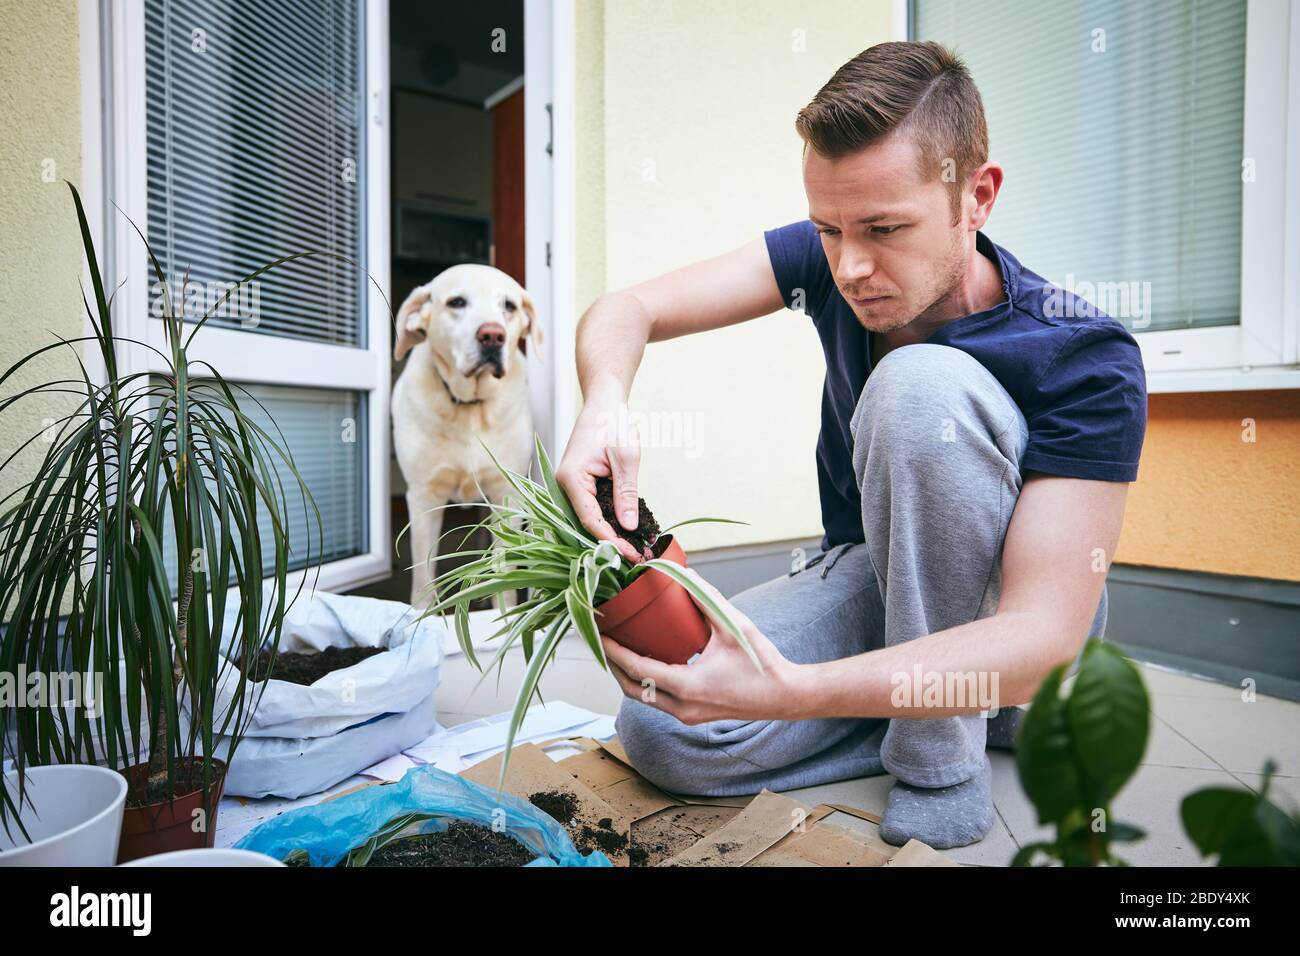 Hausarbeit im Frühjahr. Junger Mann beim Umpflanzen von Pflanzen in einen neuen Topf. Stockfoto